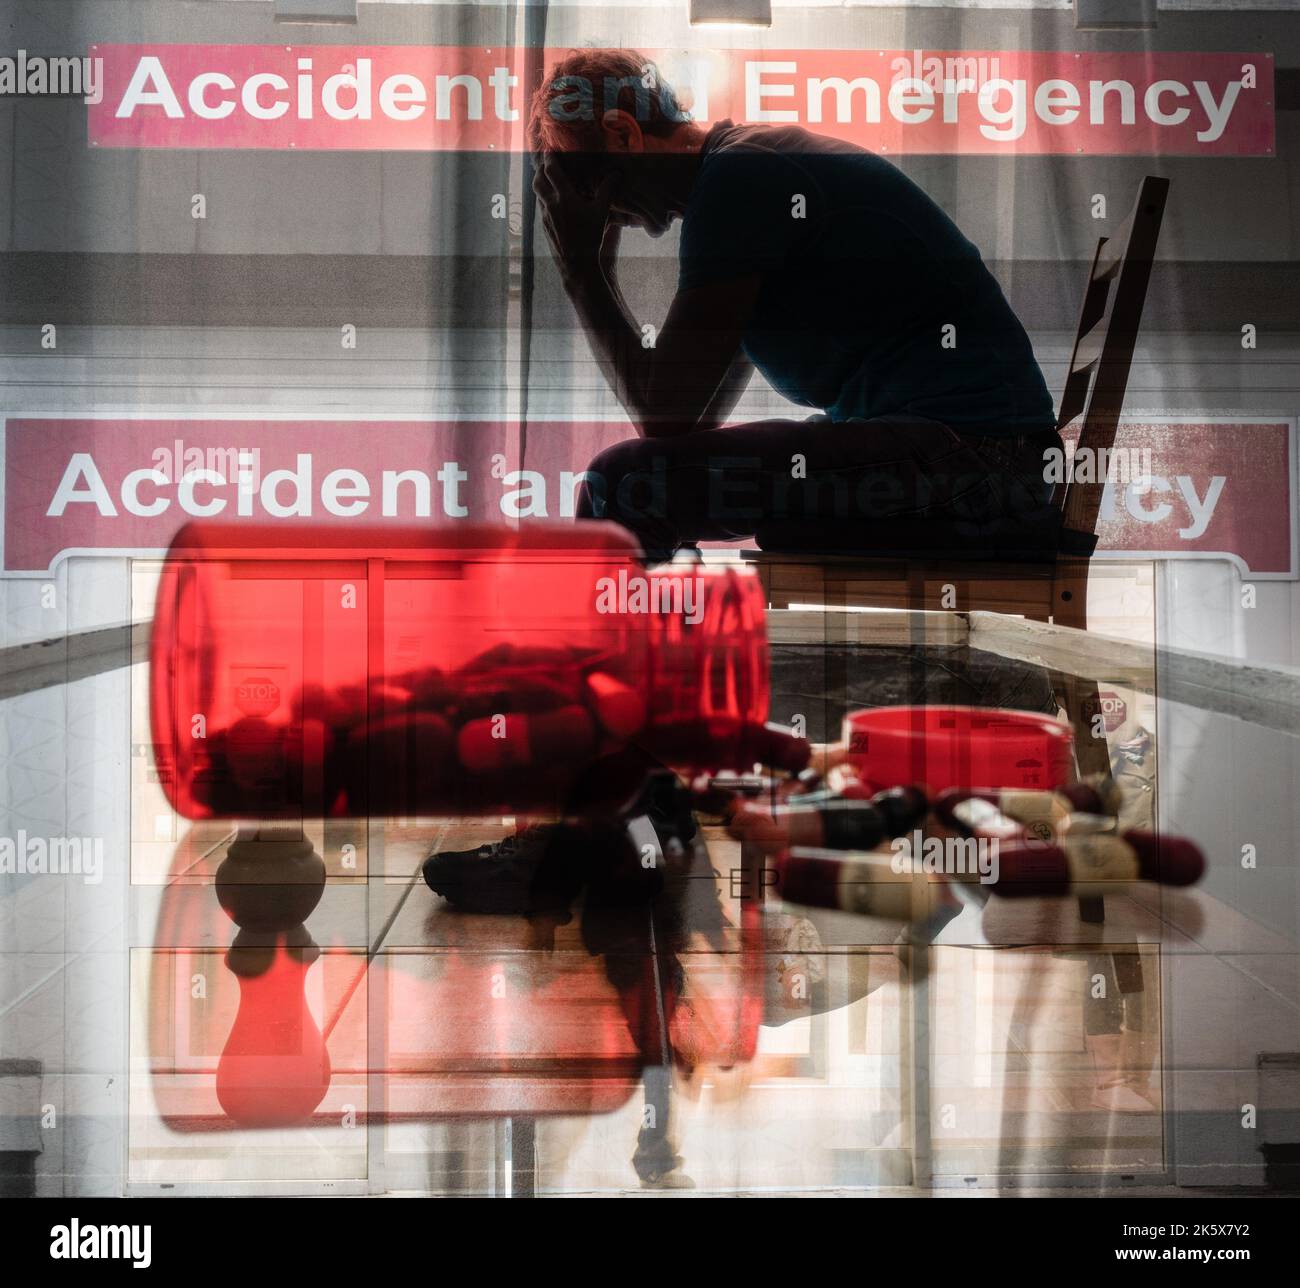 Hospital NHS Accidentes y entrada de emergencia con imagen de hombre con la cabeza en las manos. Un doctor muy trabajado, estrés, salud mental, médicos... Concepto. Foto de stock